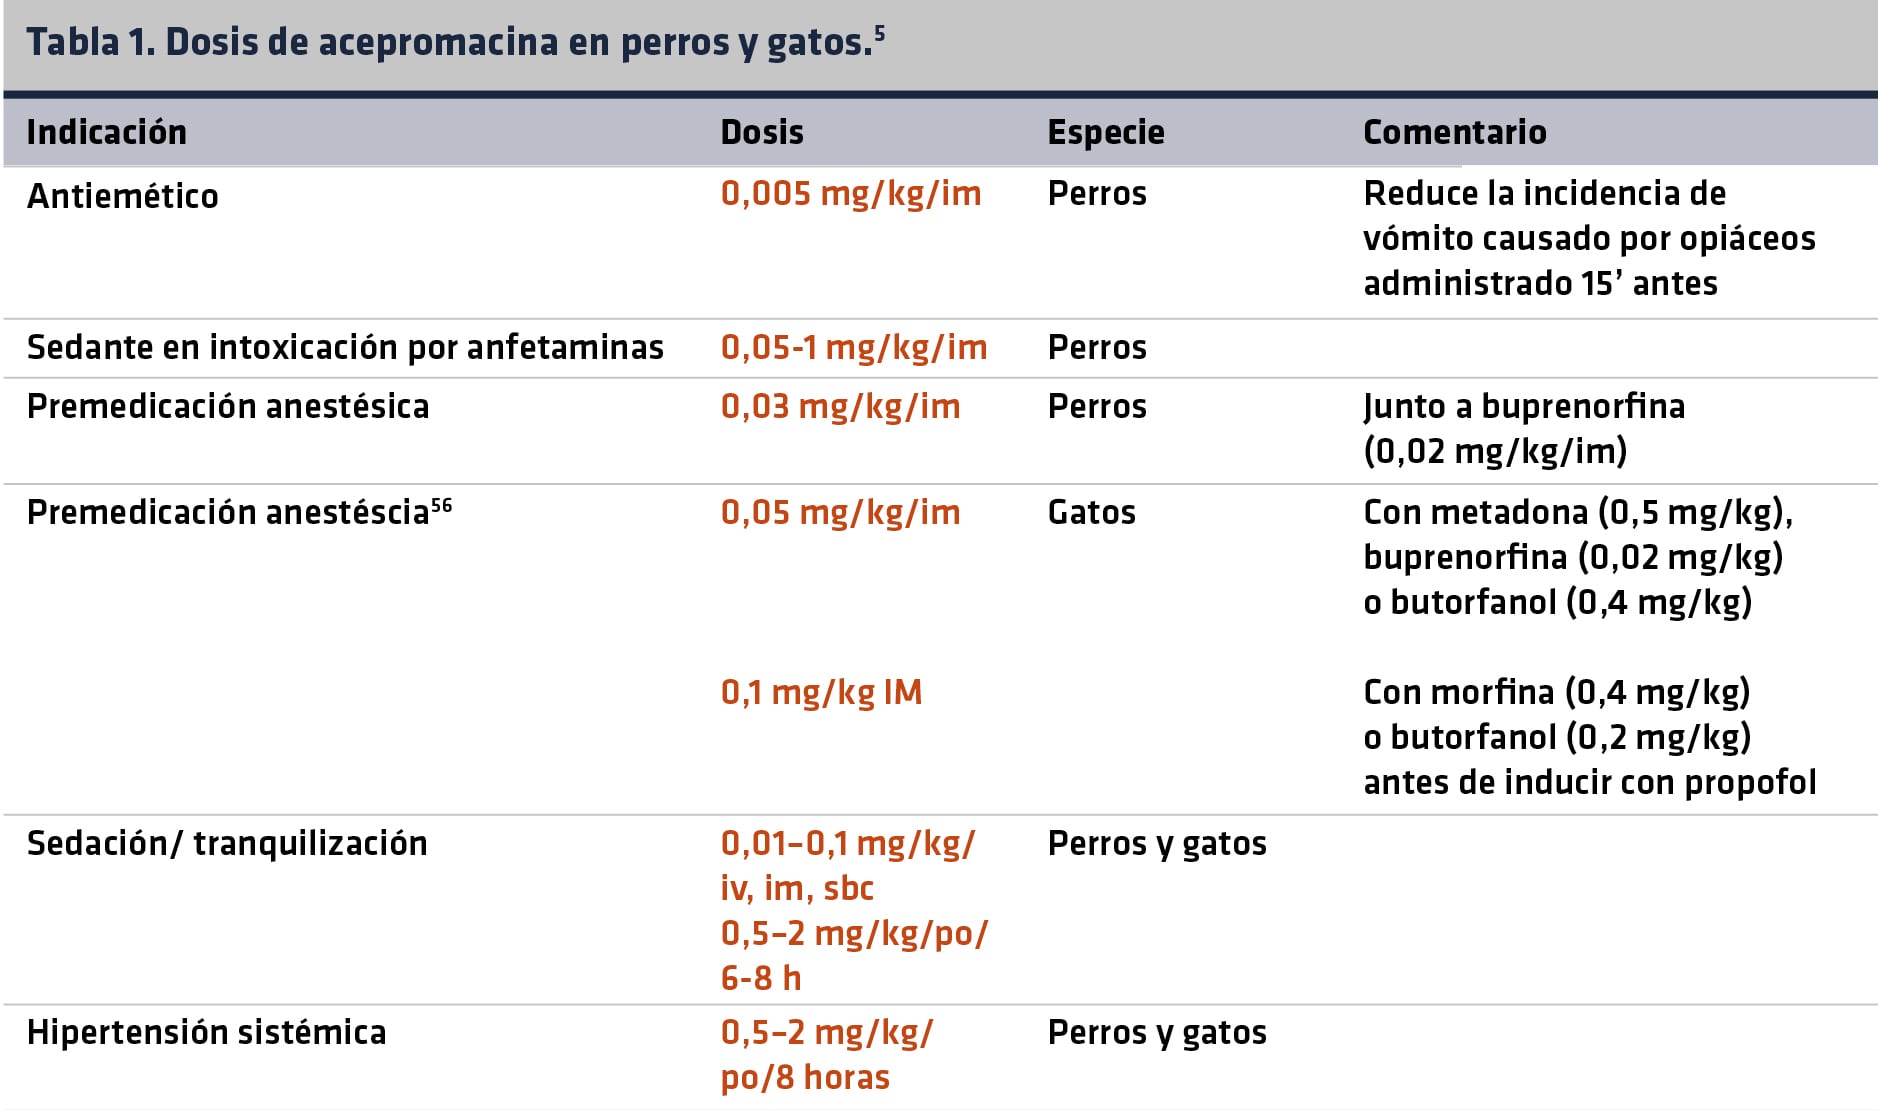 tabla1._dosis_de_acepromacina_en_perros_y_gatos_texto-min